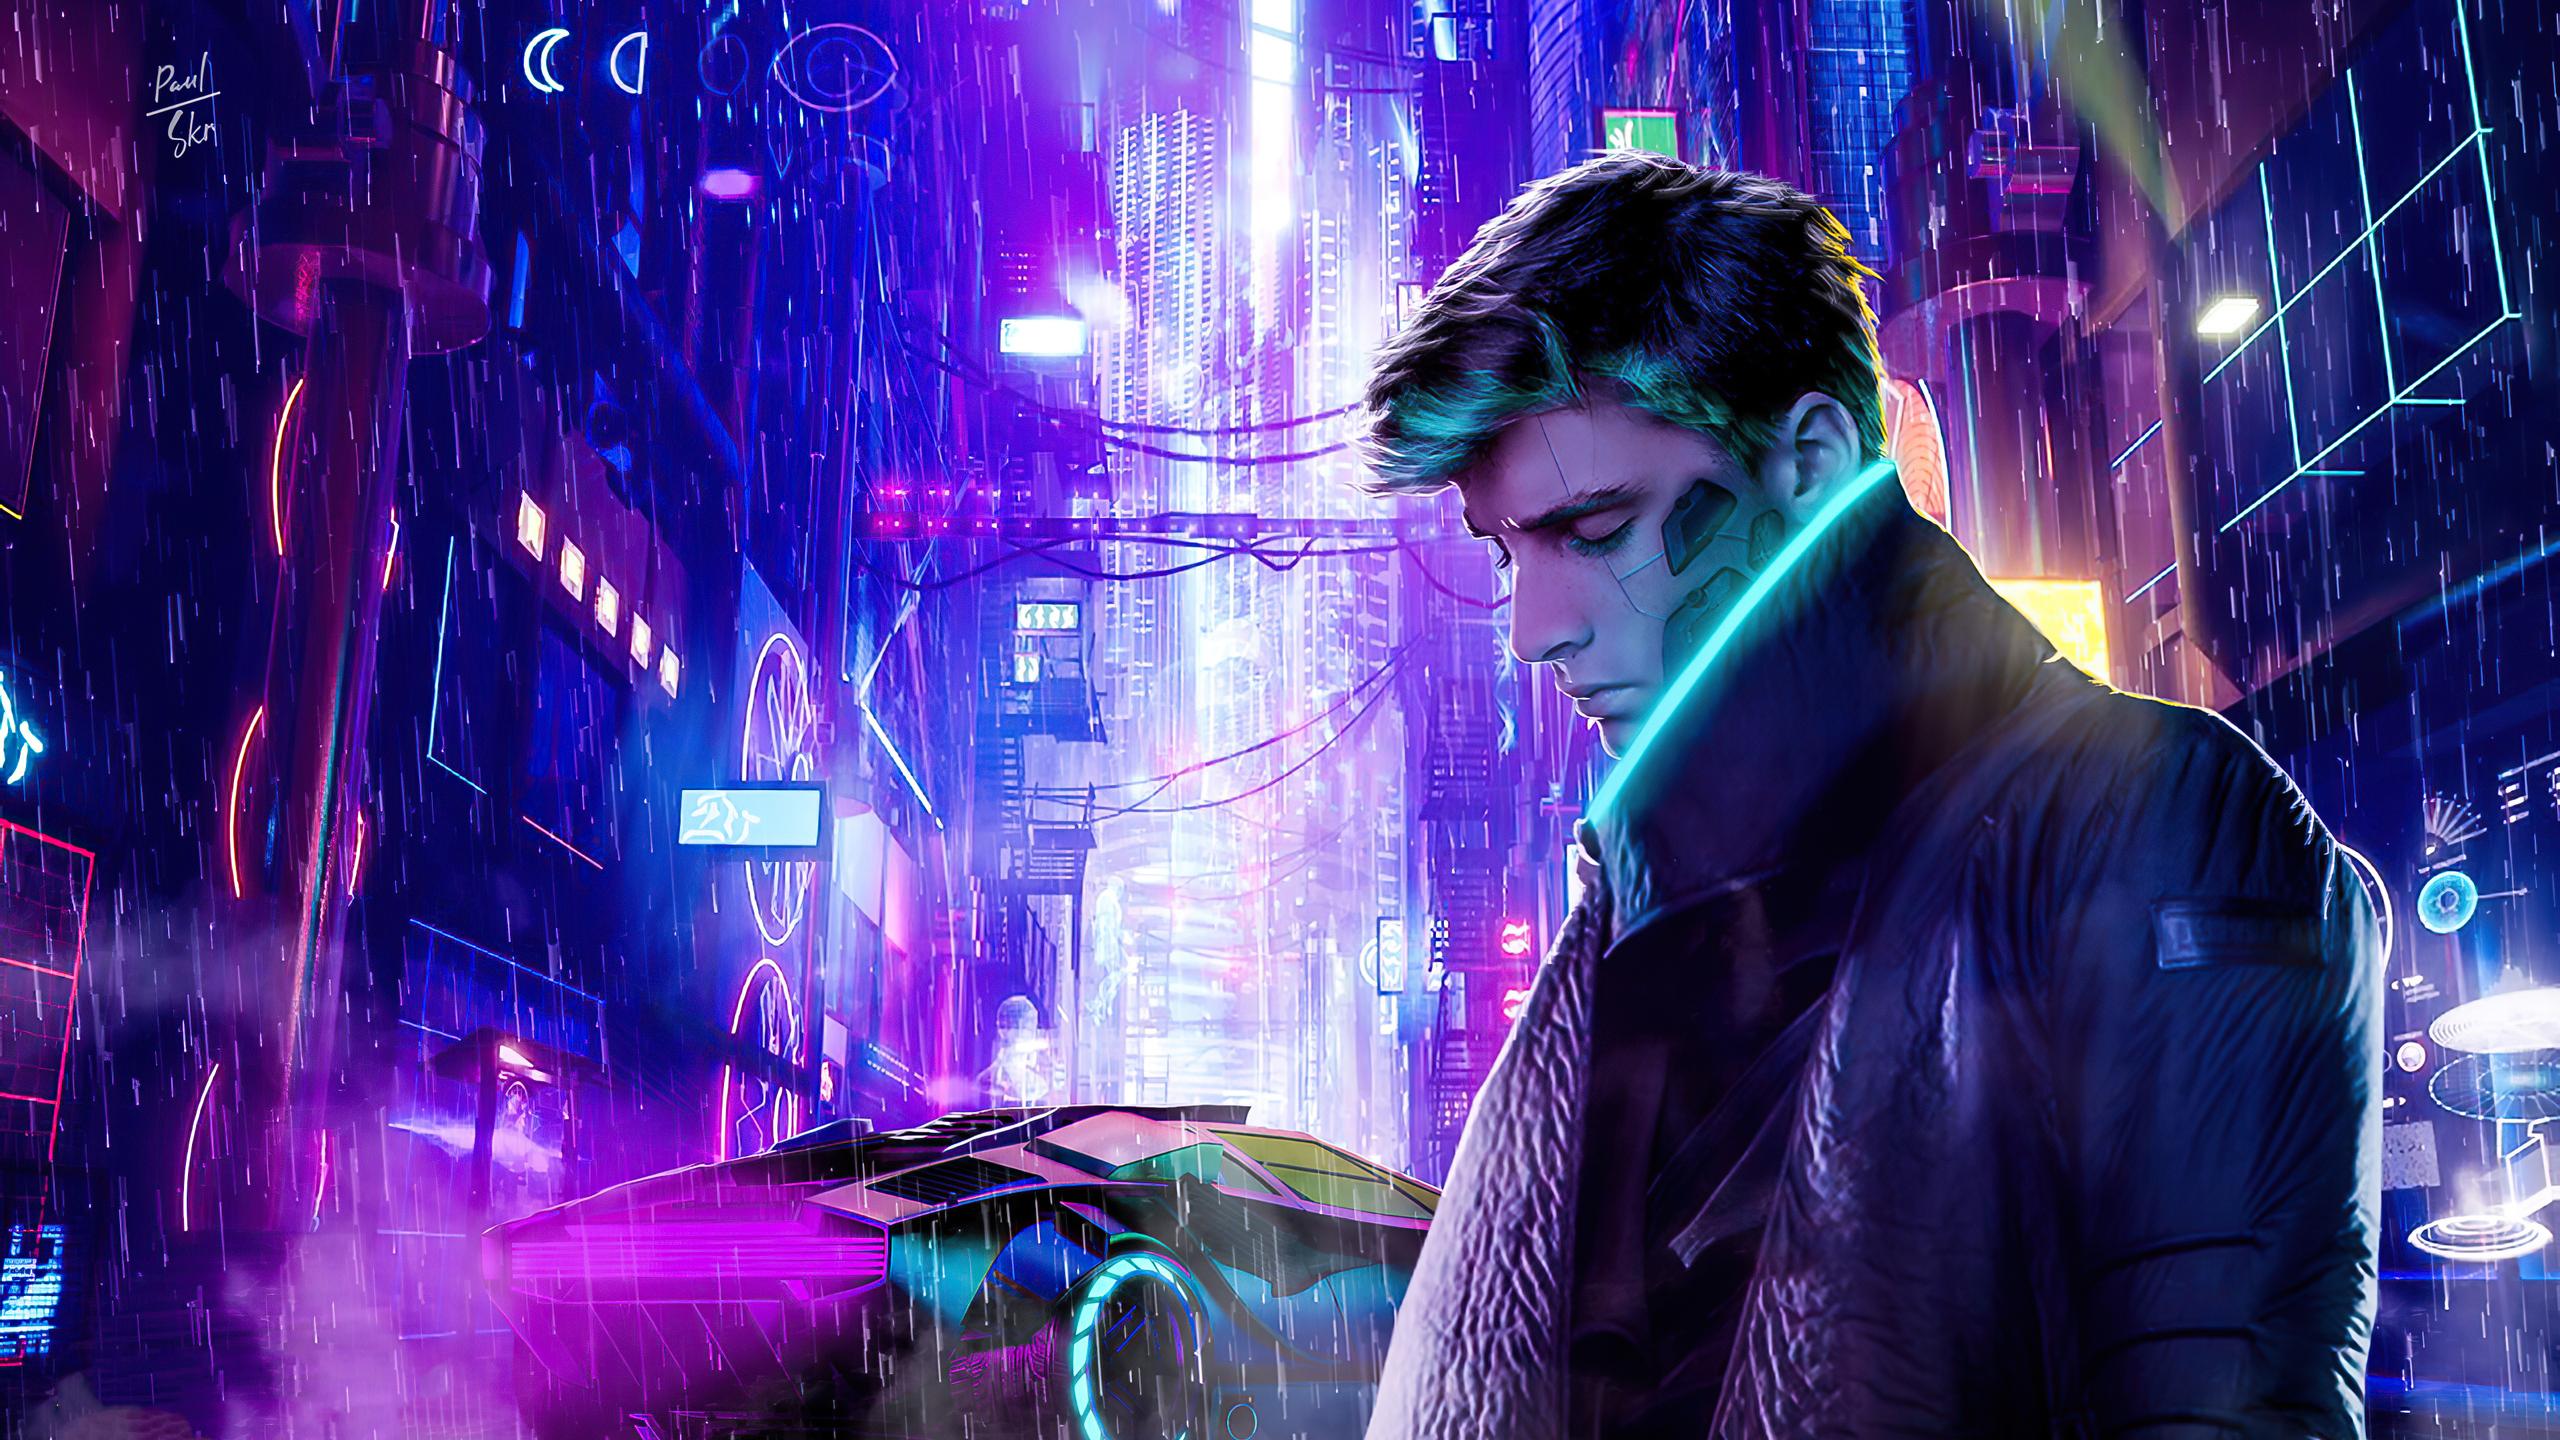 Cyberpunk Purple Wallpapers - Top Free Cyberpunk Purple Backgrounds